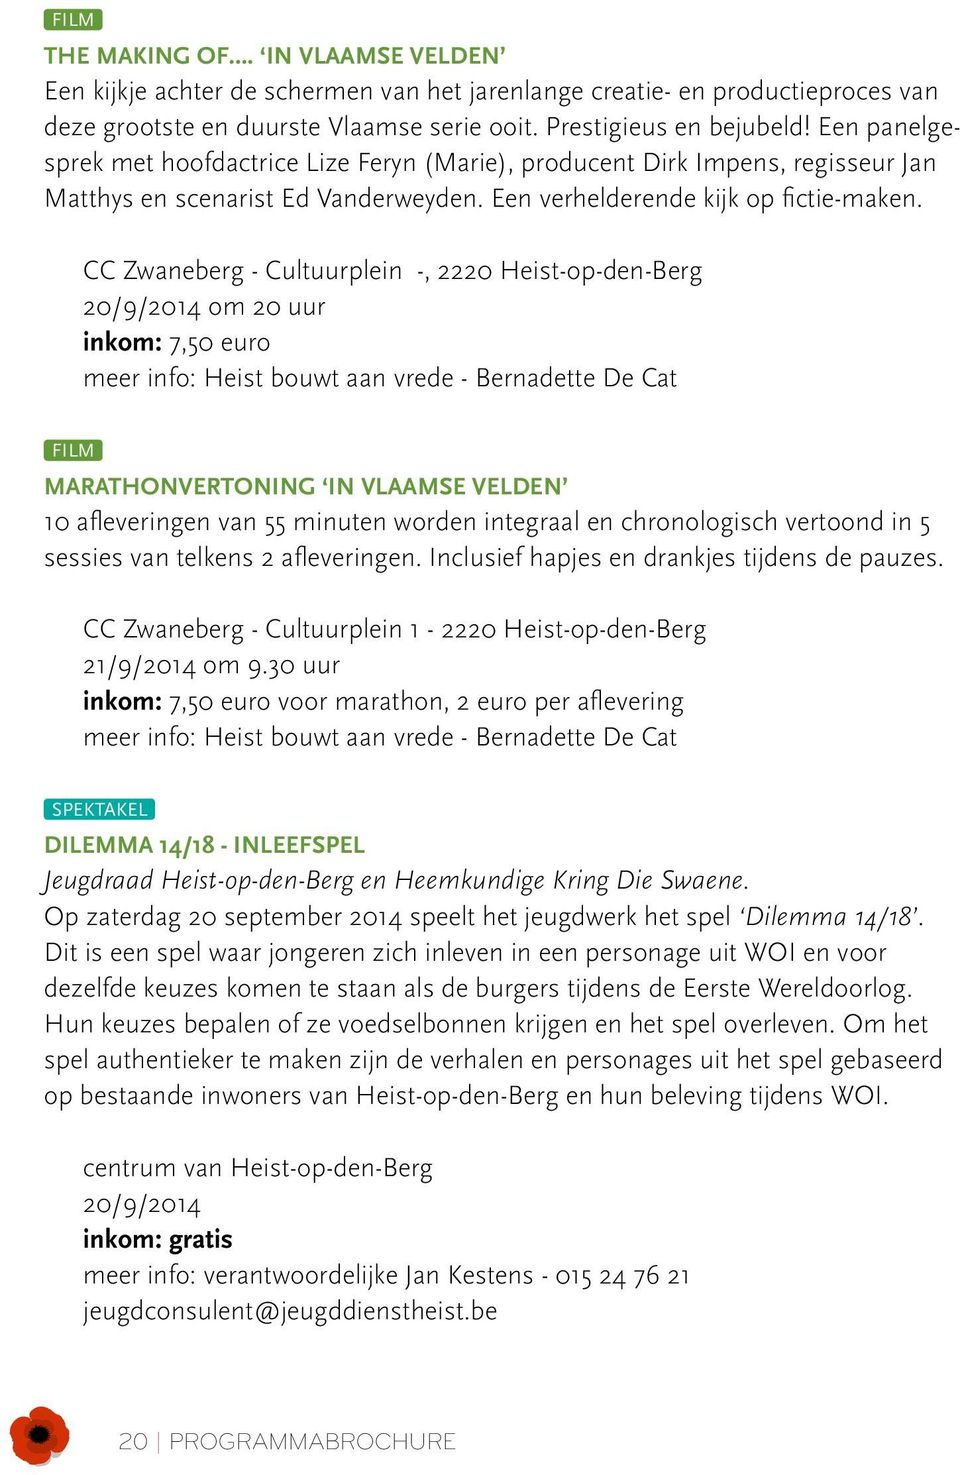 CC Zwaneberg - Cultuurplein -, 2220 Heist-op-den-Berg 20/9/2014 om 20 uur inkom: 7,50 euro meer info: Heist bouwt aan vrede - Bernadette De Cat FILM Marathonvertoning In Vlaamse Velden 10